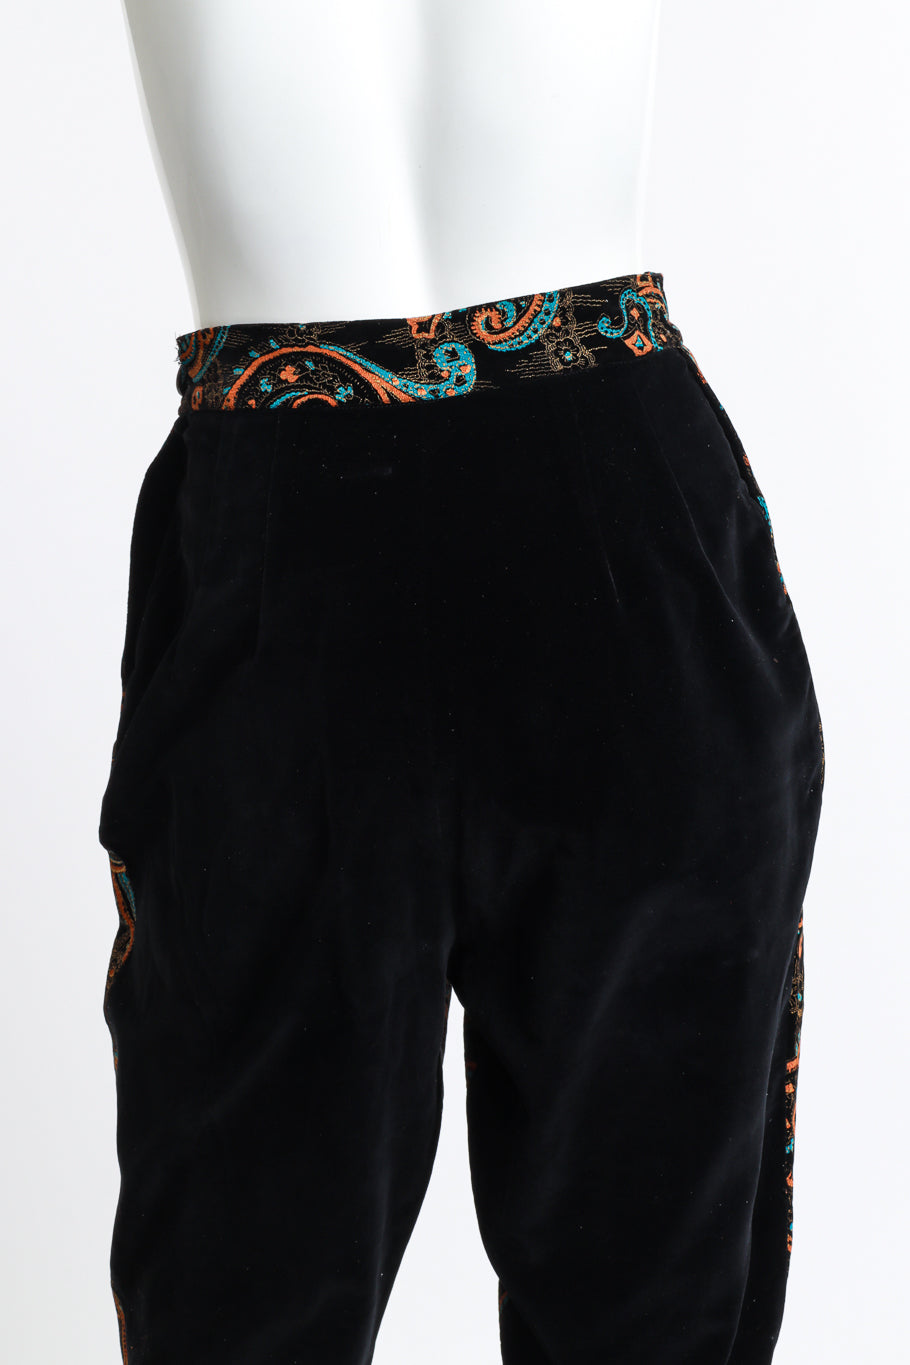 Paisley Pant Set by Dallas Sportswear pants detail on mannequin @RECESS LA